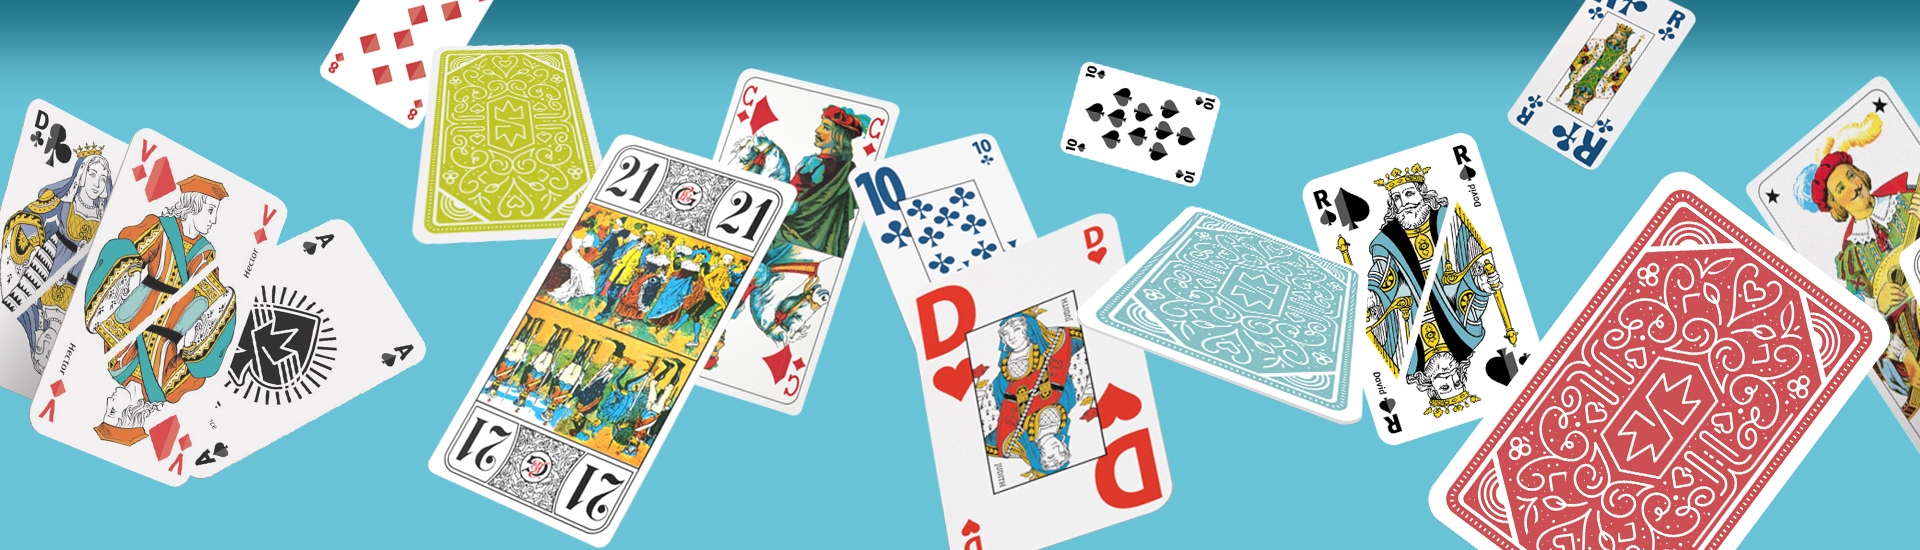 Jeu de 54 cartes - Ducale. Vente en ligne jeux de cartes standard roi